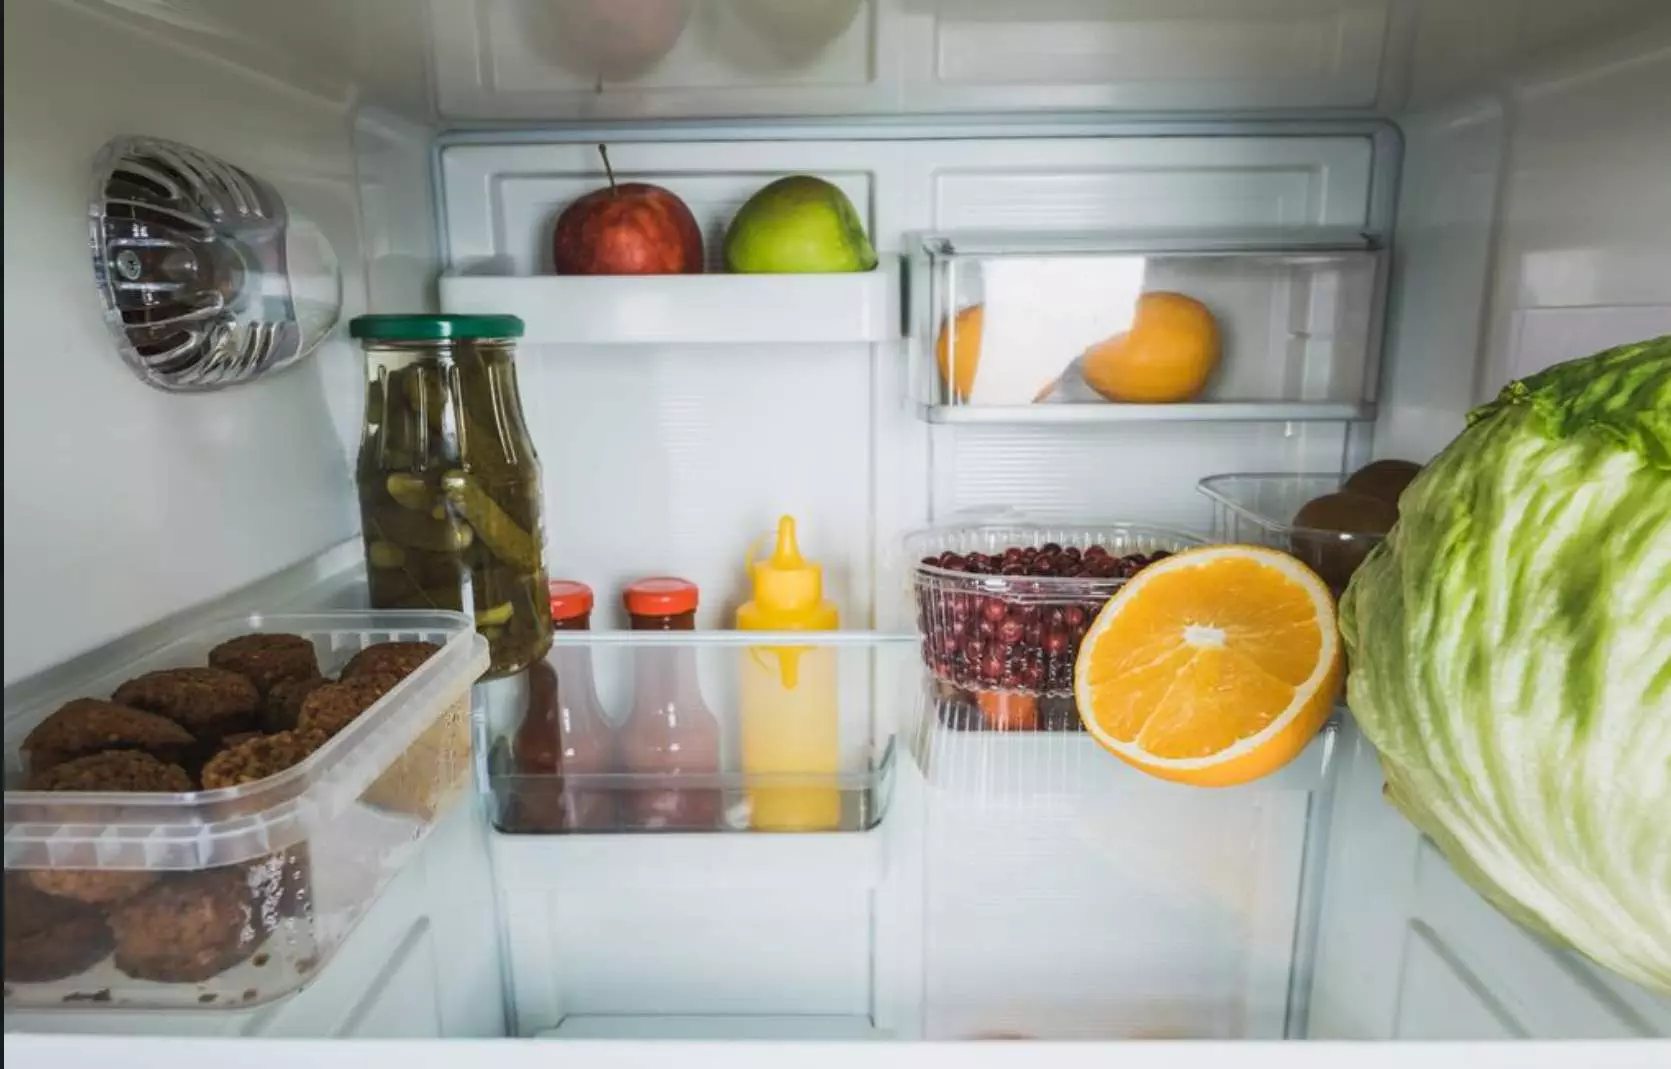 La ce treapta se tine frigiderul? Care este temperatura optima? • Refu Blog